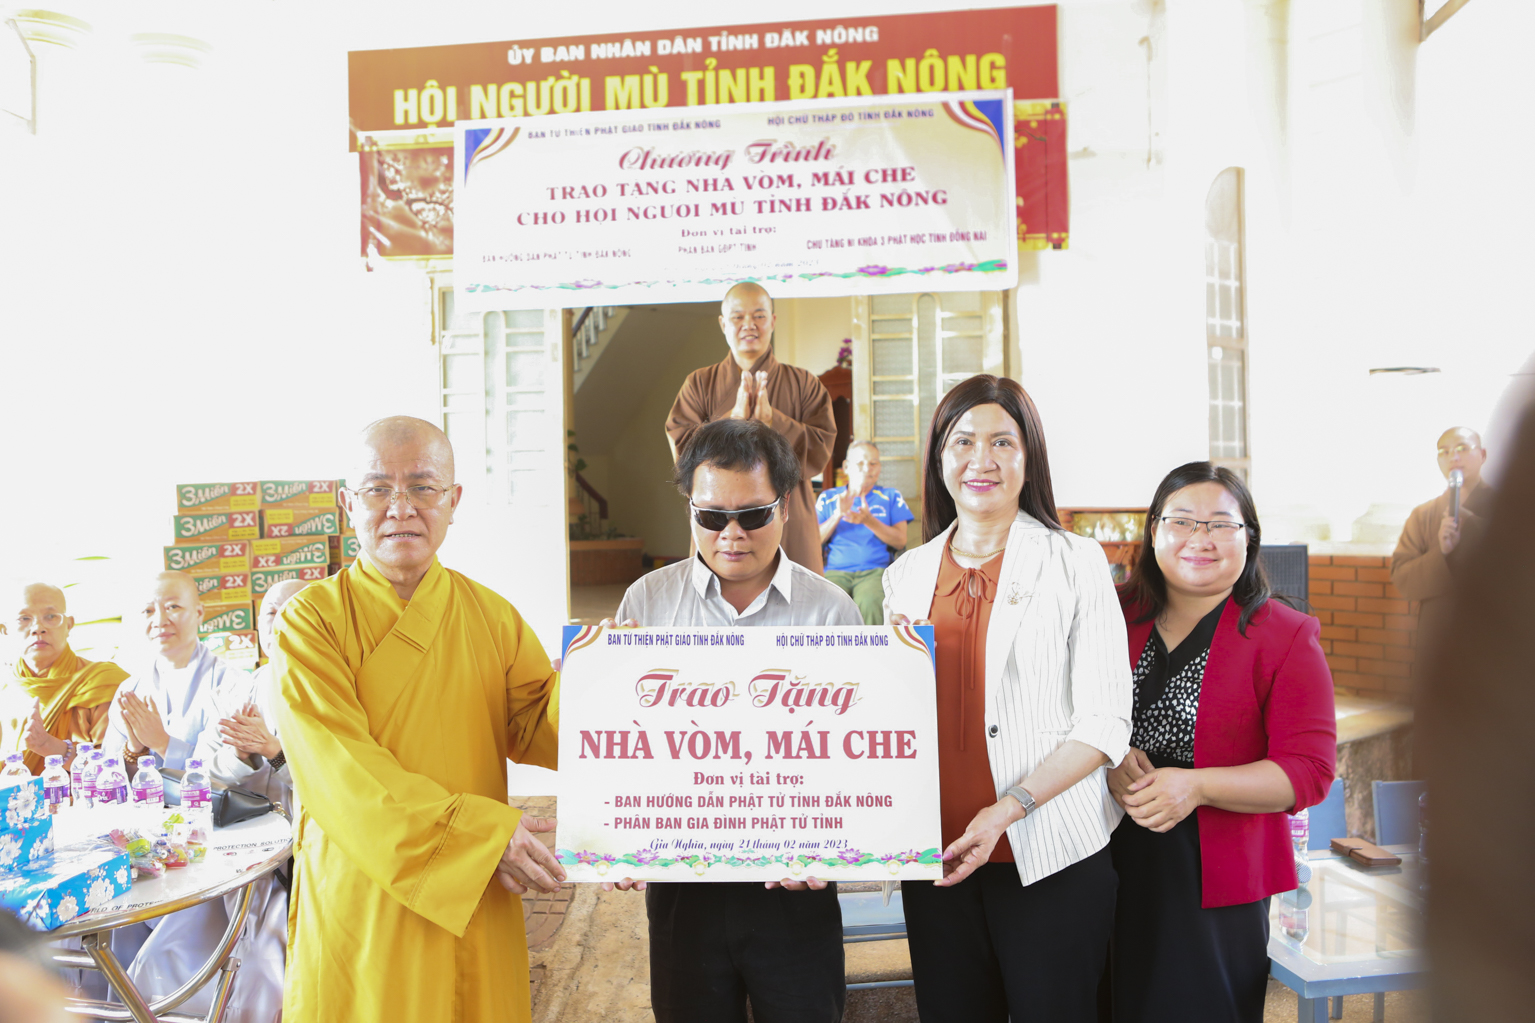 Trao tặng quà, cộng trình phụ Nhà Vòm, Mái Che cho Hội Người mù tỉnh Đắk Nông